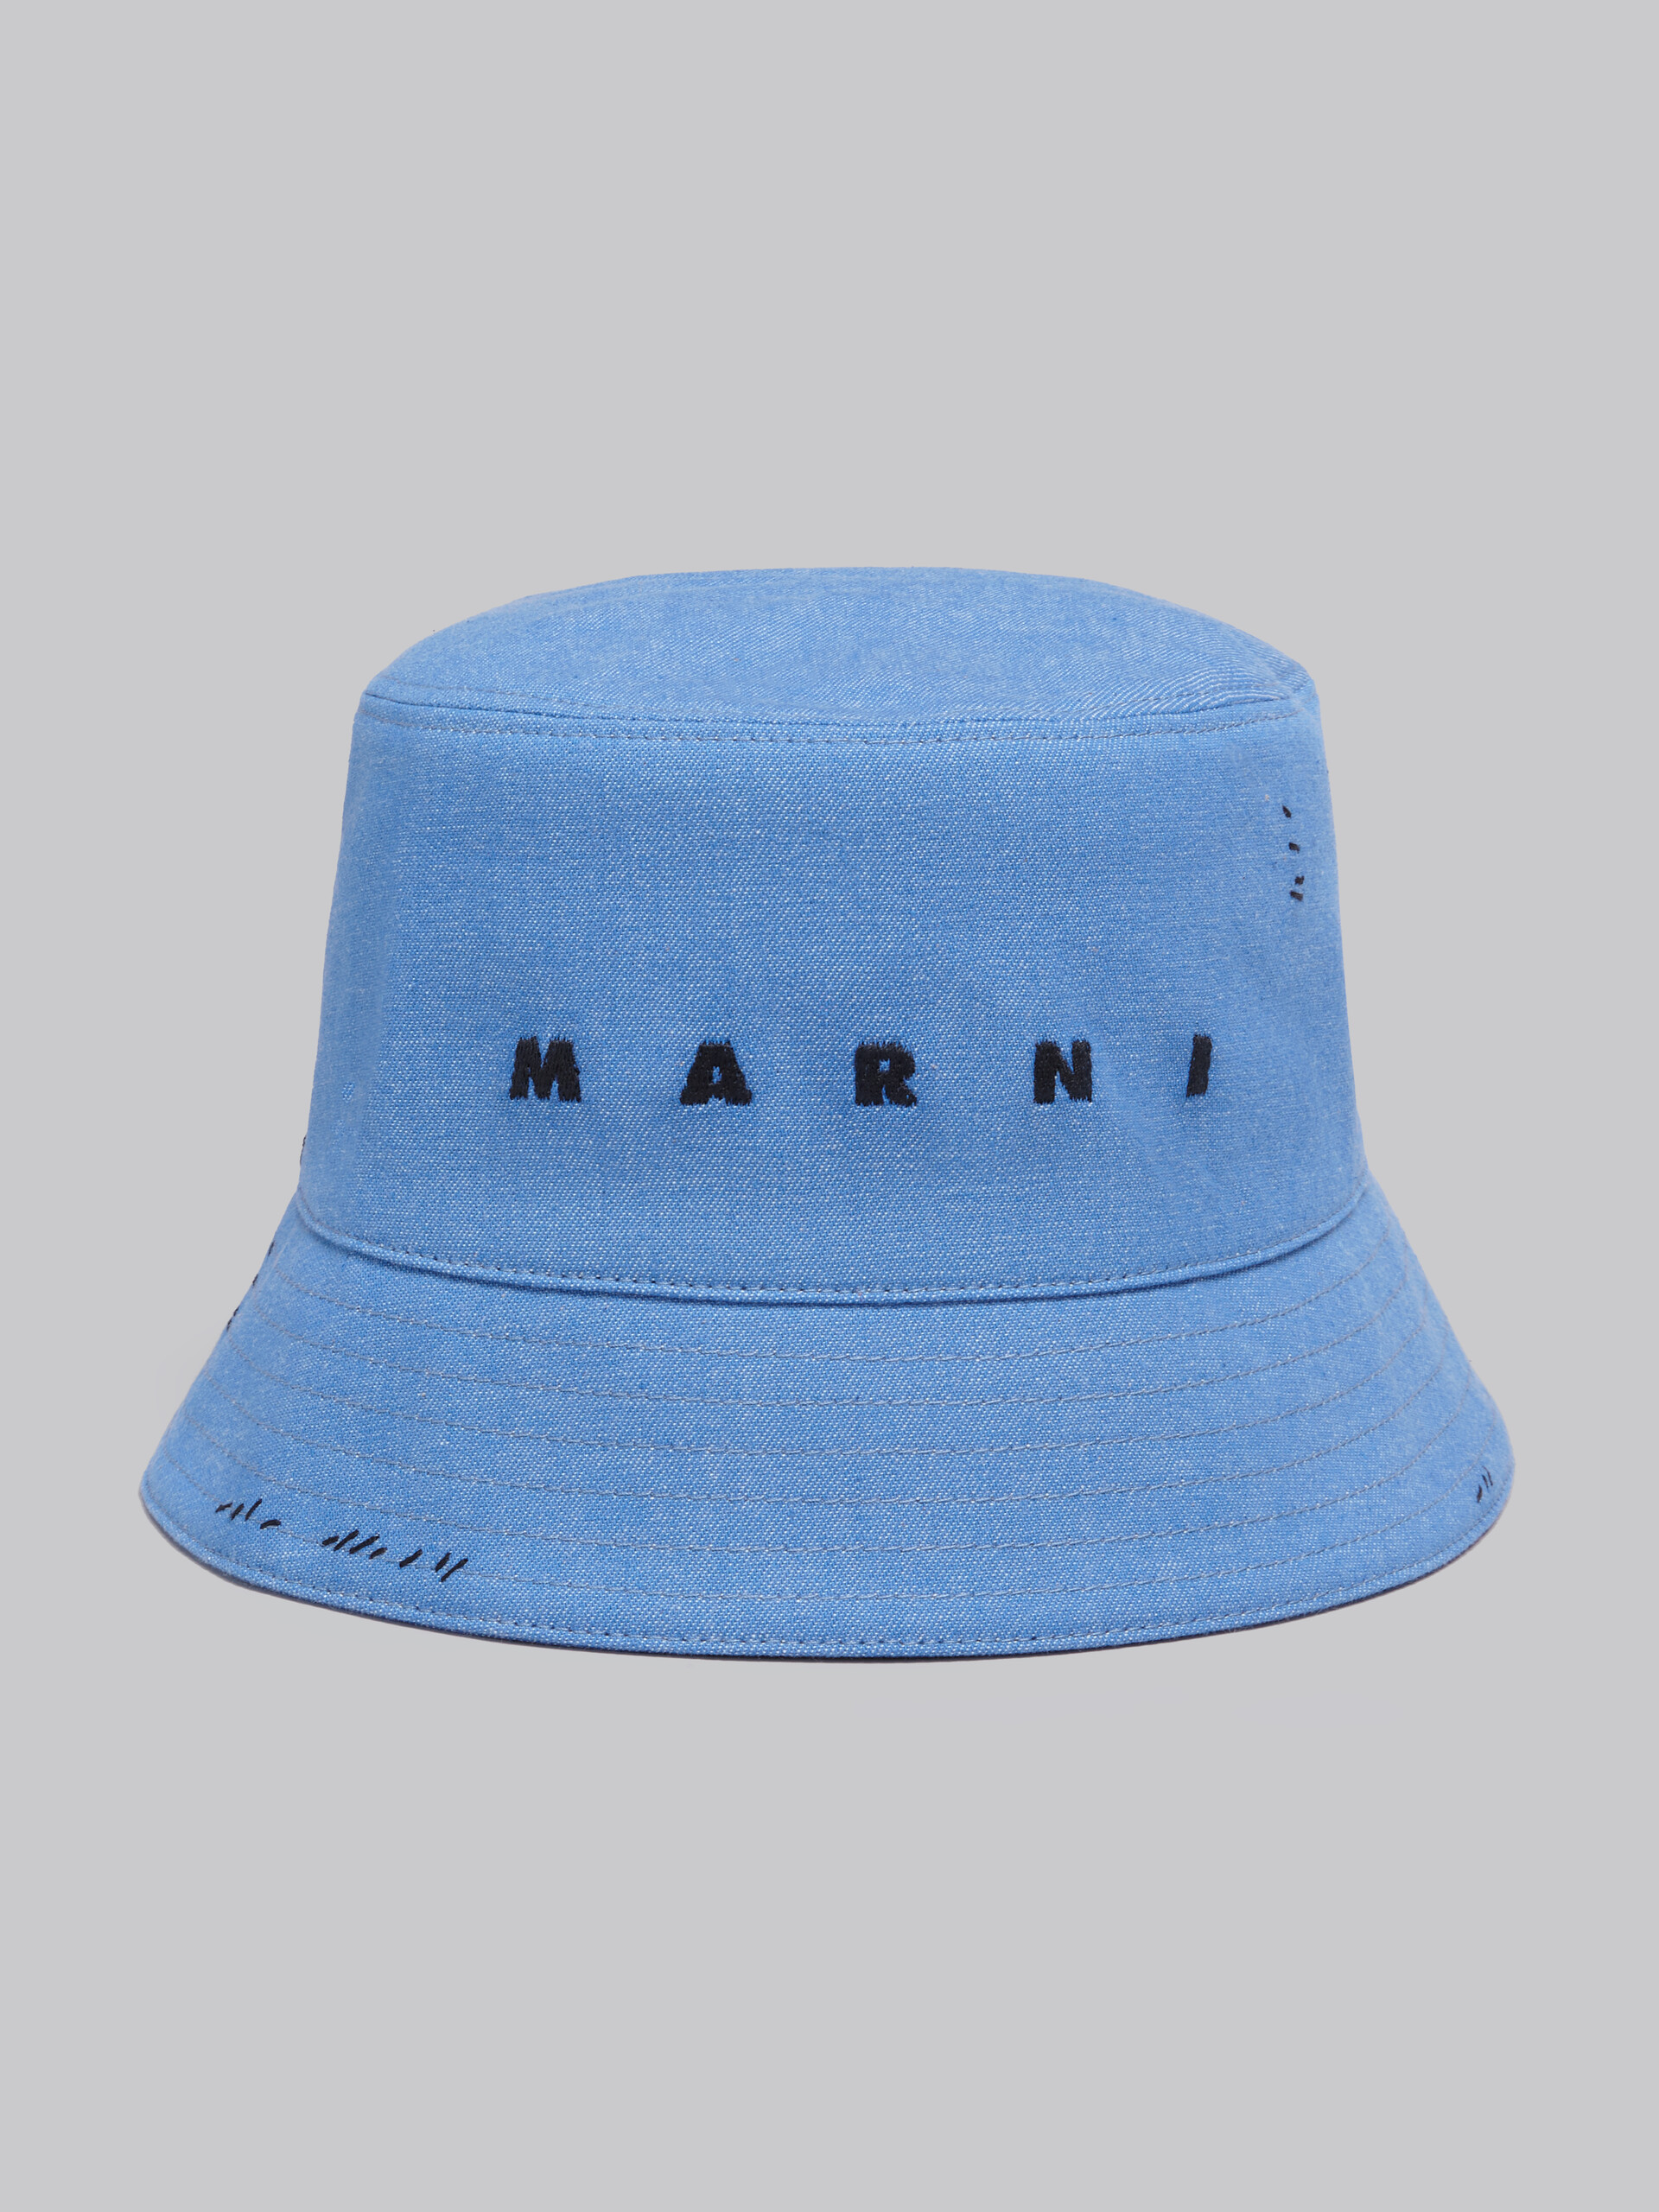 Blauer Fischerhut aus Denim mit Marni-Flicken - Hüte - Image 4